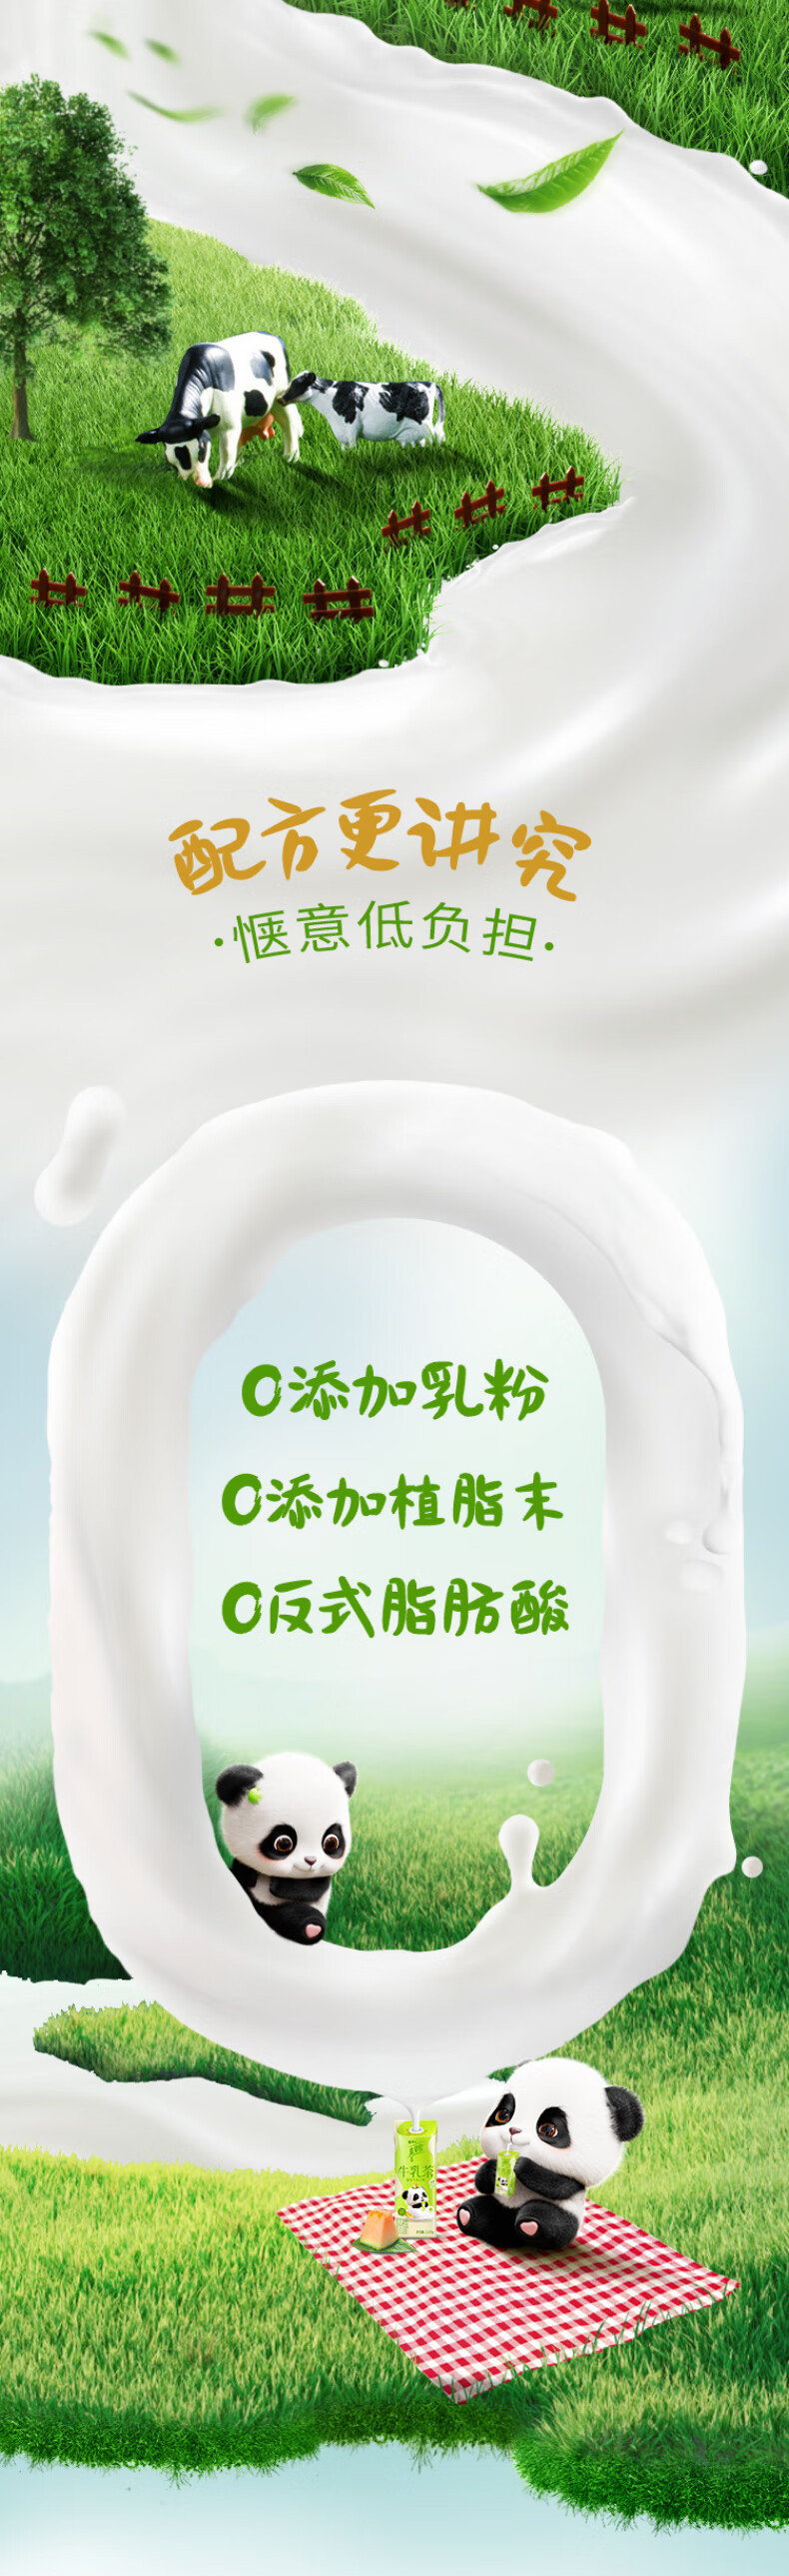 蒙牛 真果粒牛乳茶伯爵红茶口味/蜜瓜乌龙口味奶茶饮料康美笑脸包